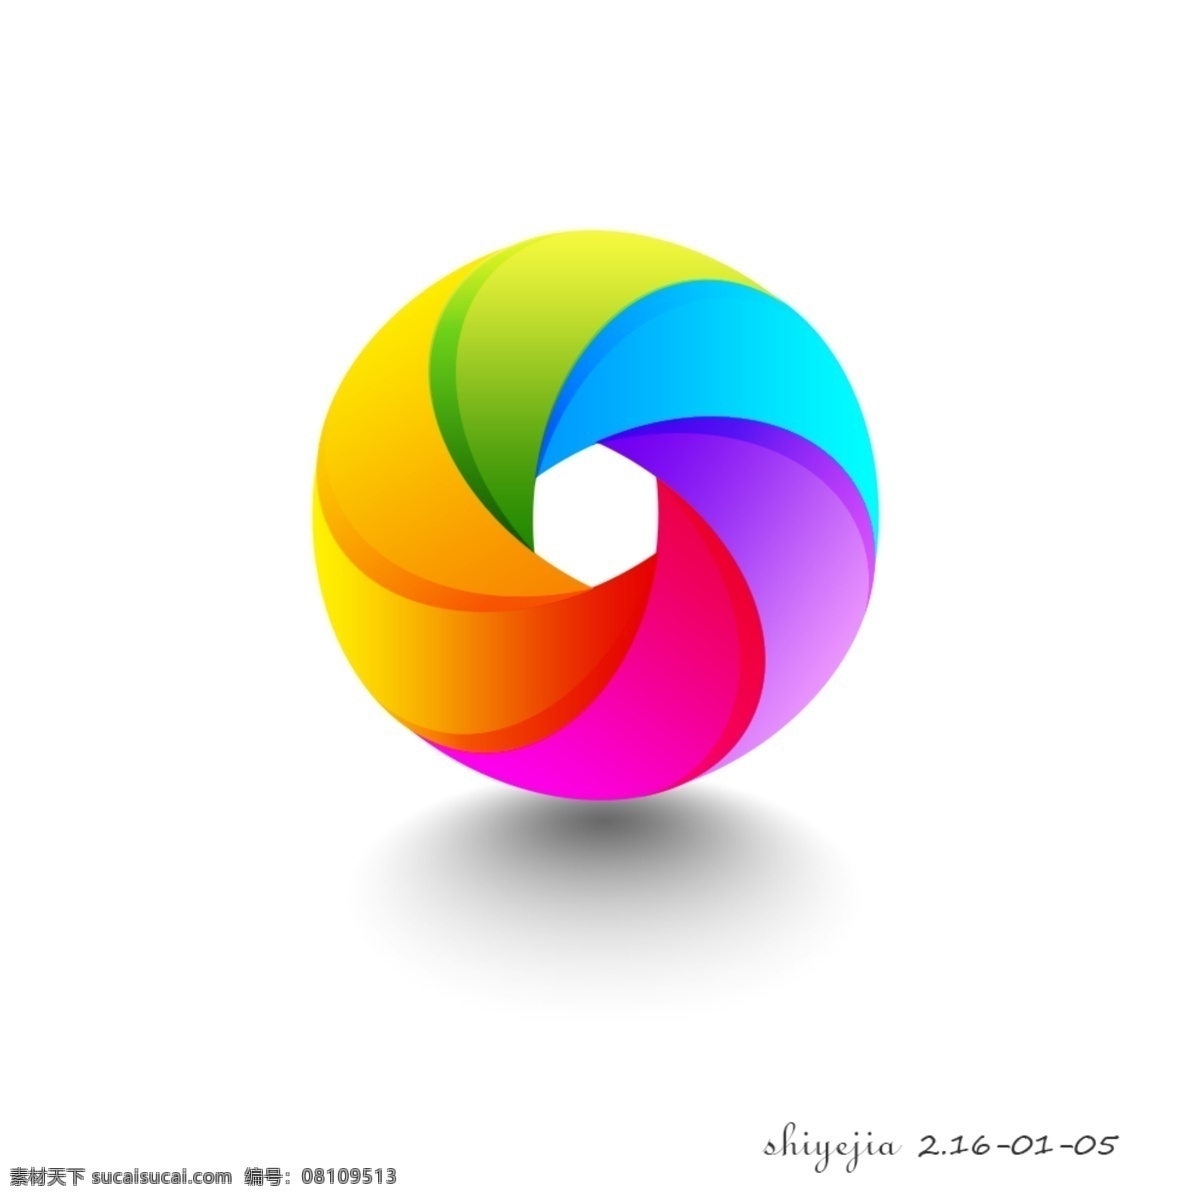 多彩 圆环 logo 图形 色彩 红 橙 黄 绿 青 蓝 紫 白色